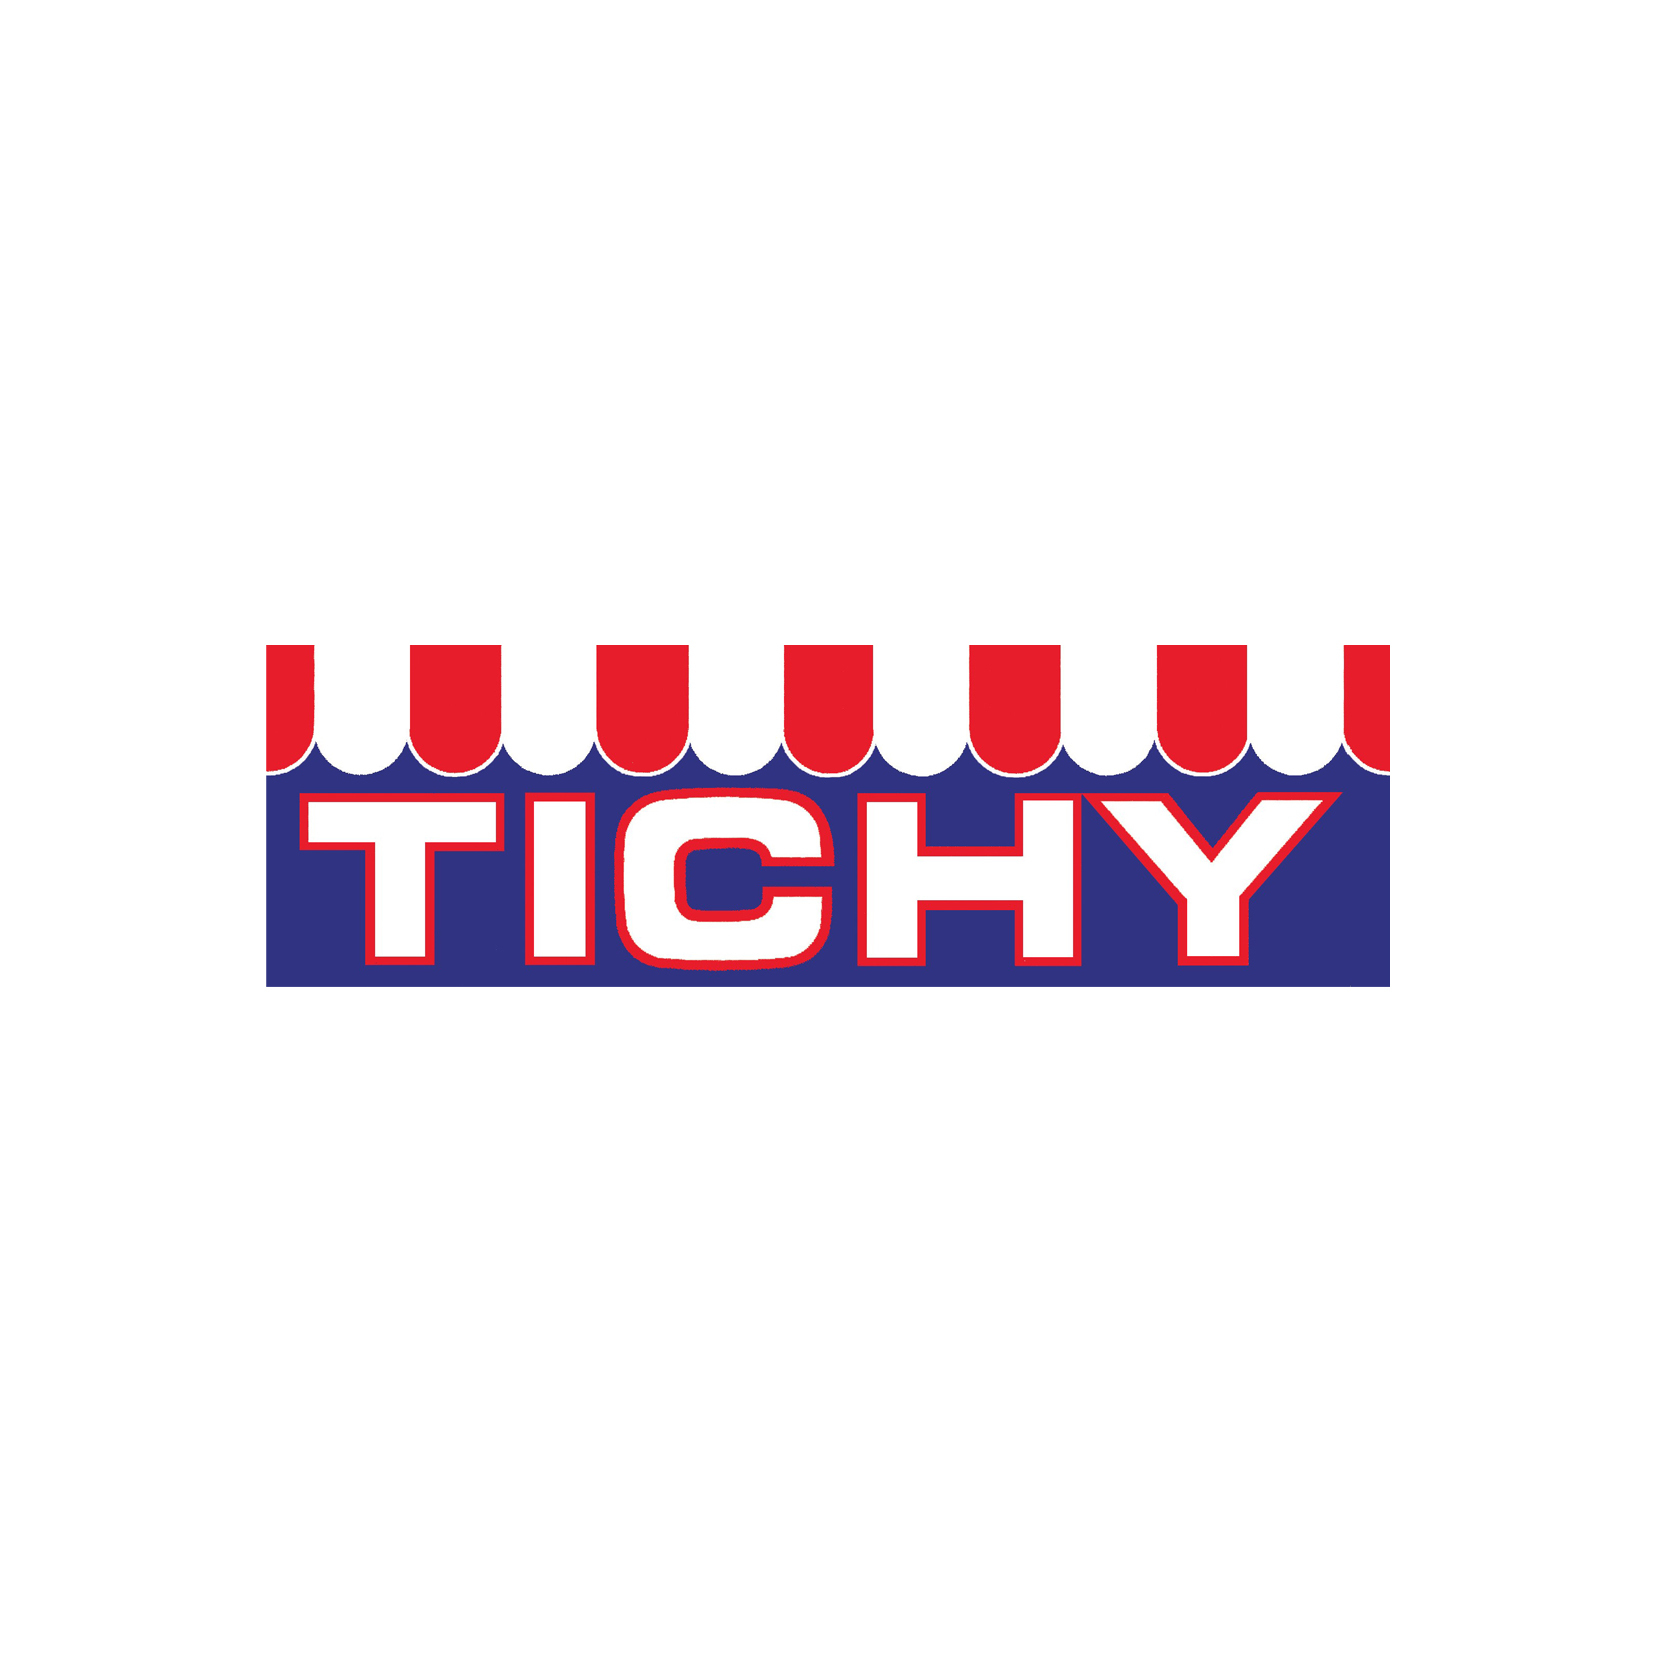 Tichy Logo 1